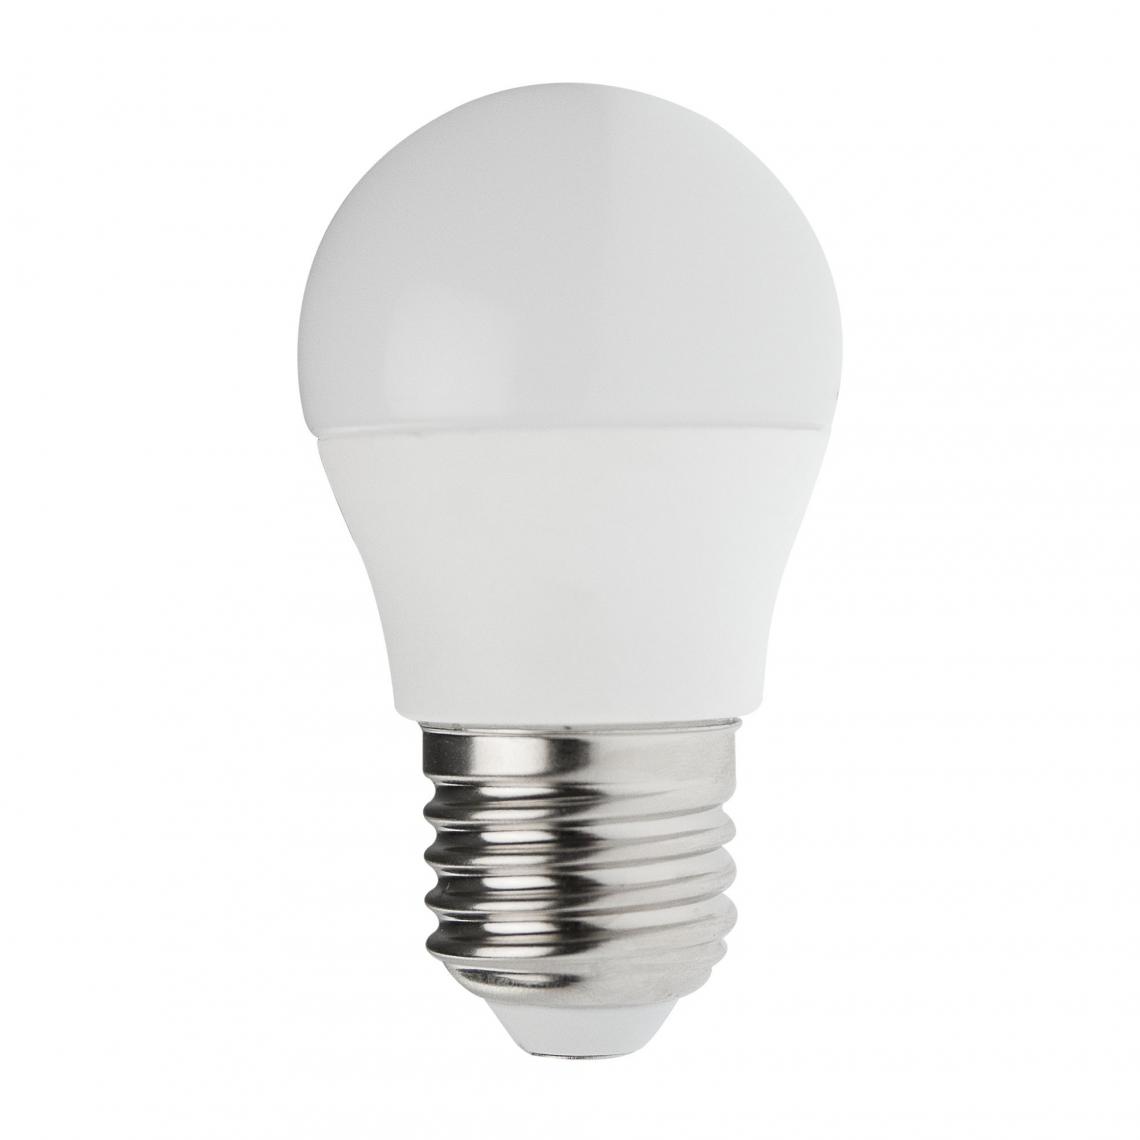 Velamp - Ampoule LED SMD, Mini-sphérique P45, 6W / 470lm, culot E27, 3000K - Ampoules LED